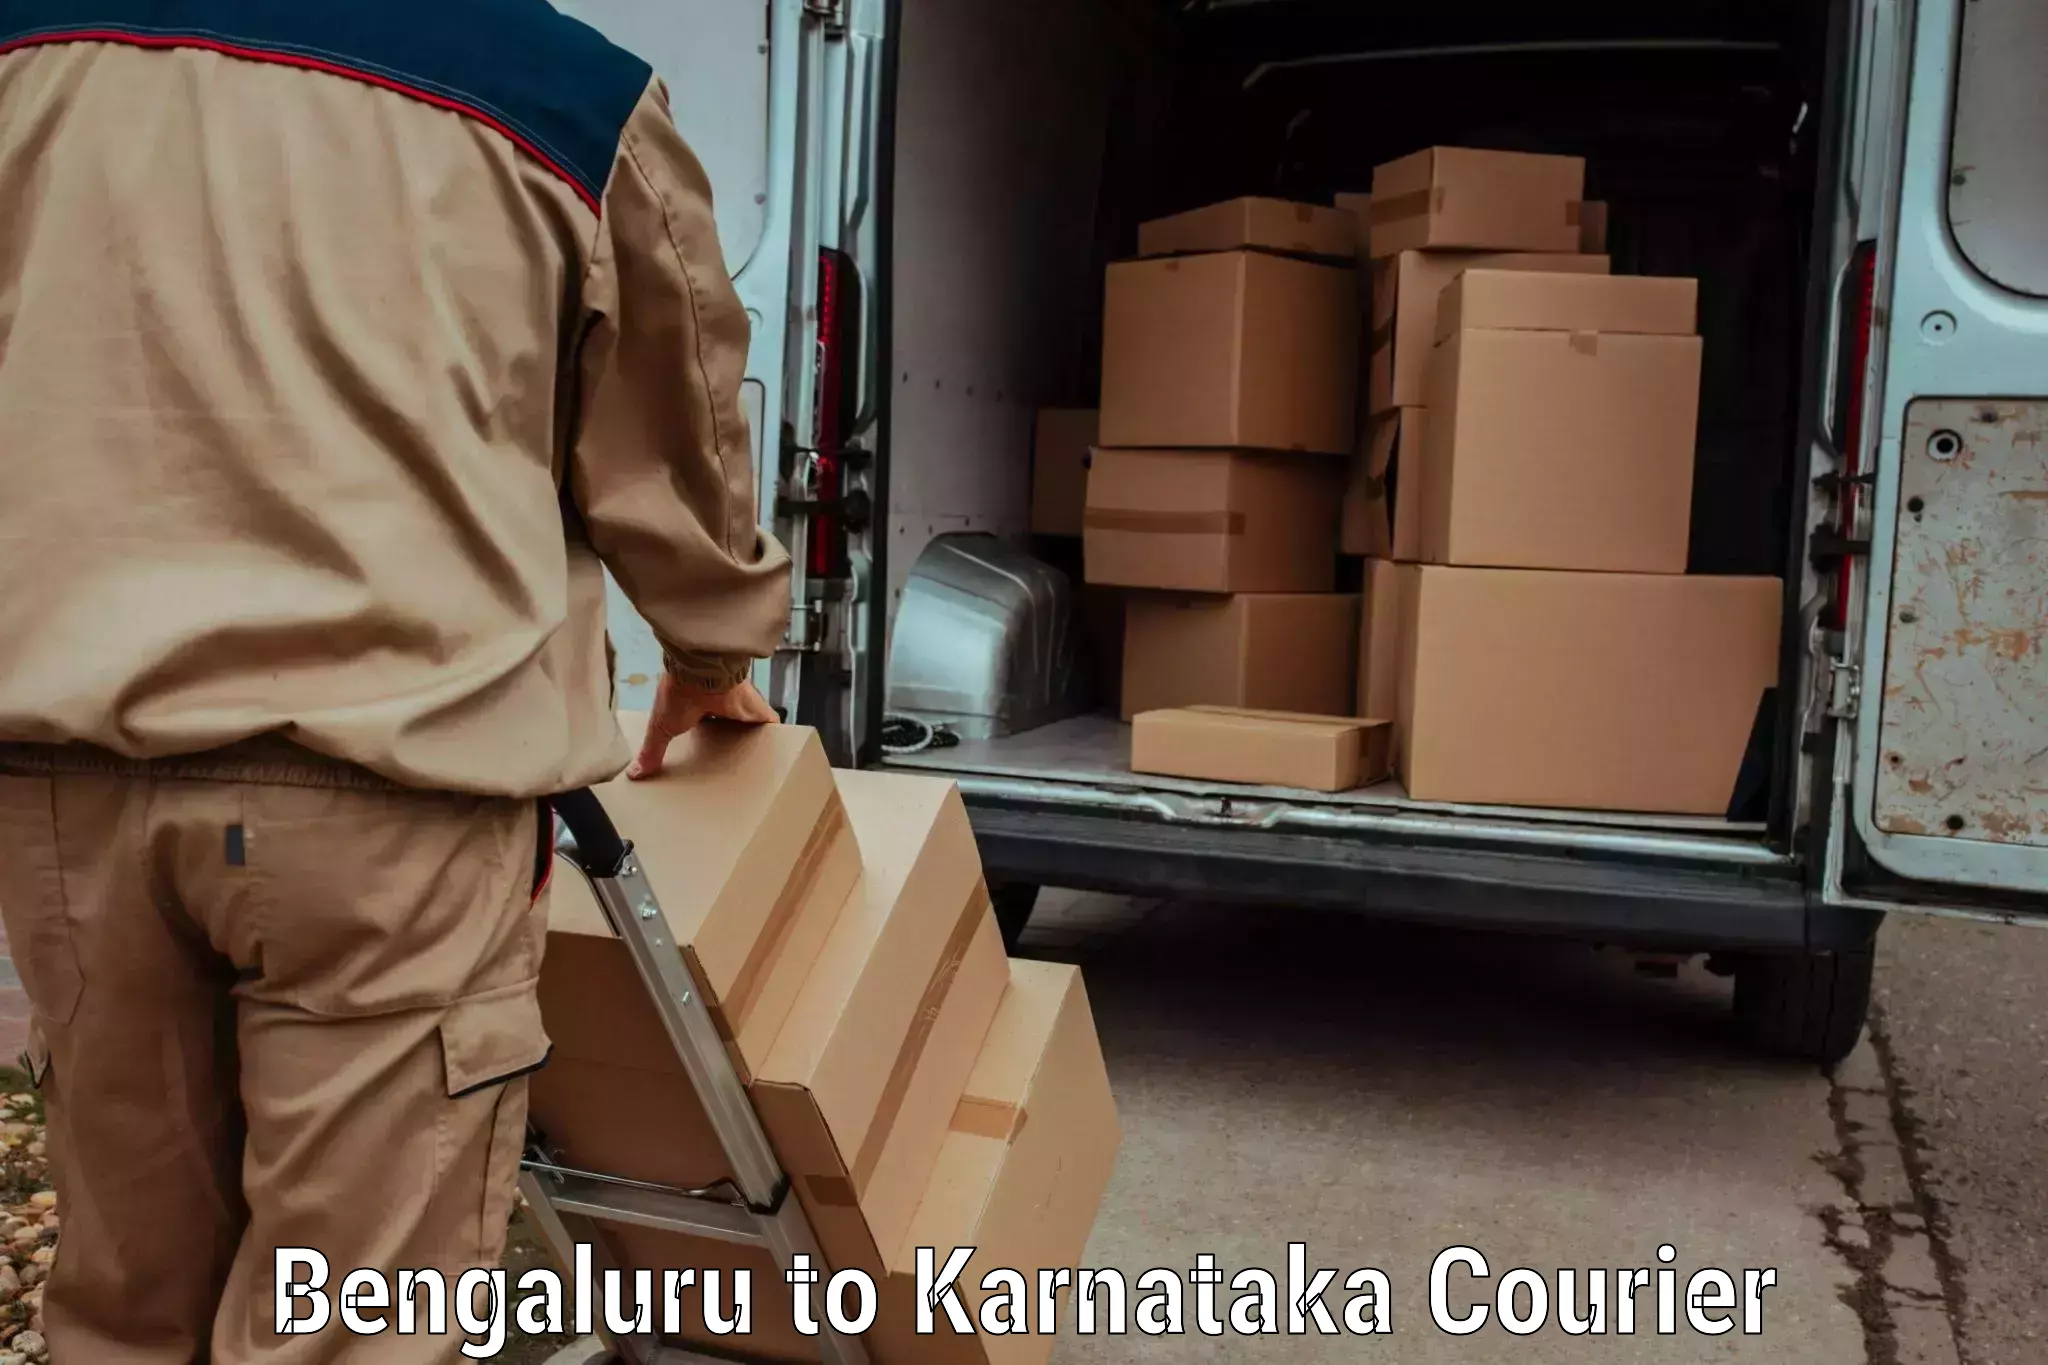 Quick dispatch service in Bengaluru to Chintamani Kolar